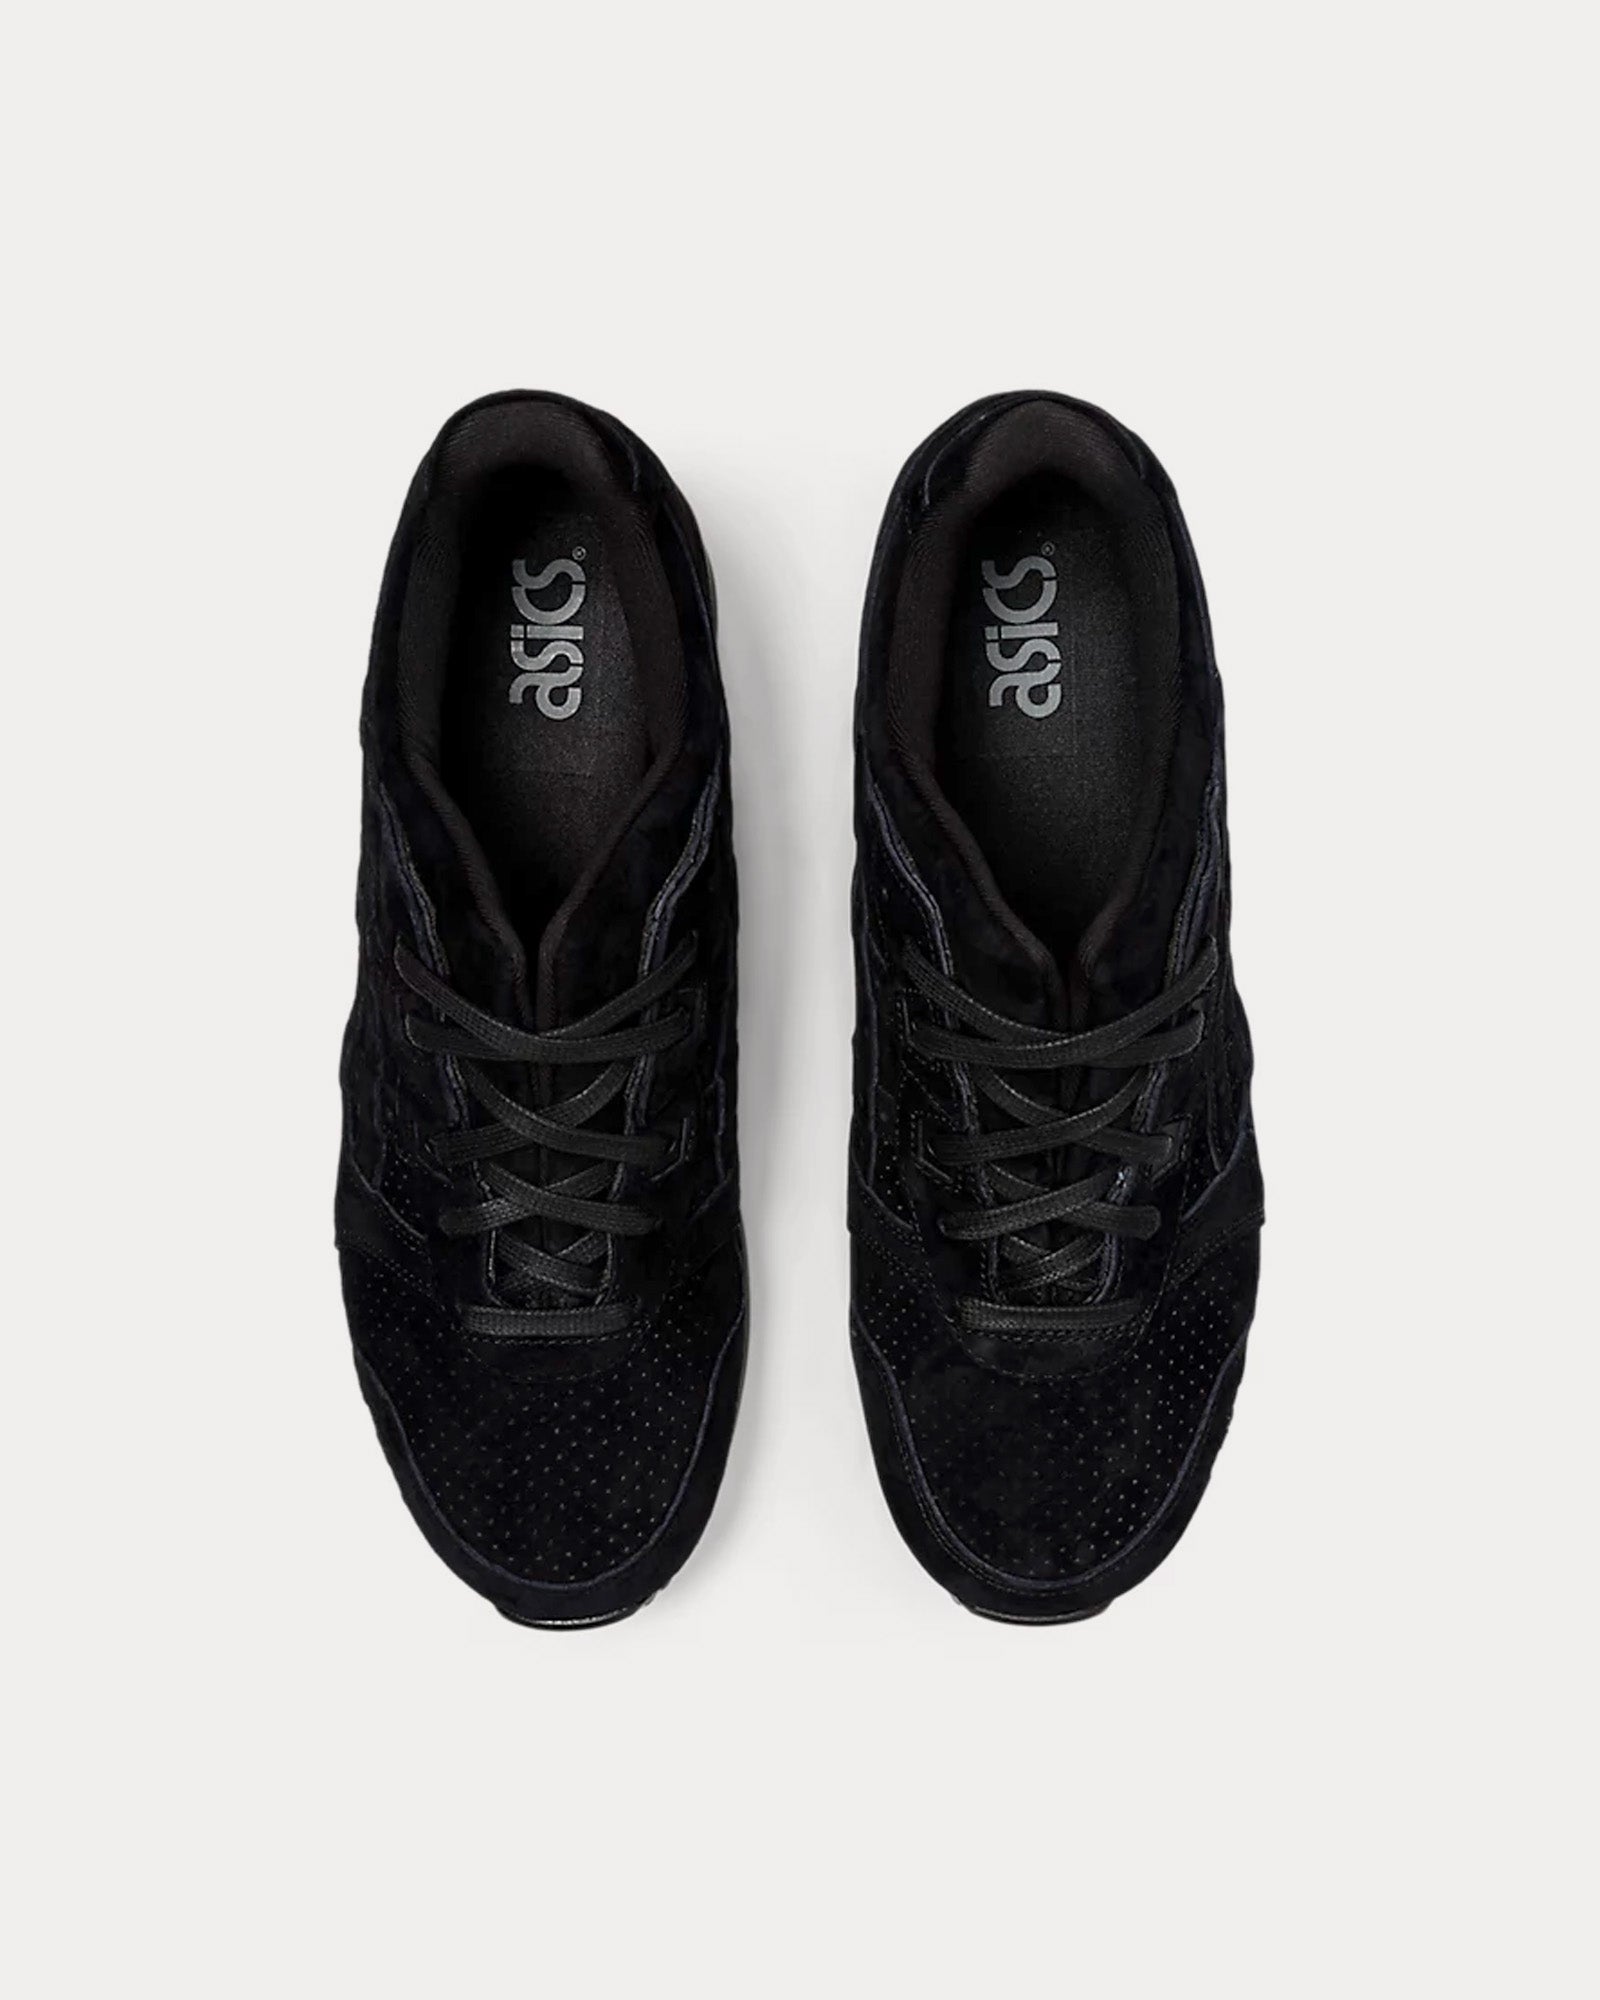 Asics - Gel-Lyte III OG Black / Black Low Top Sneakers